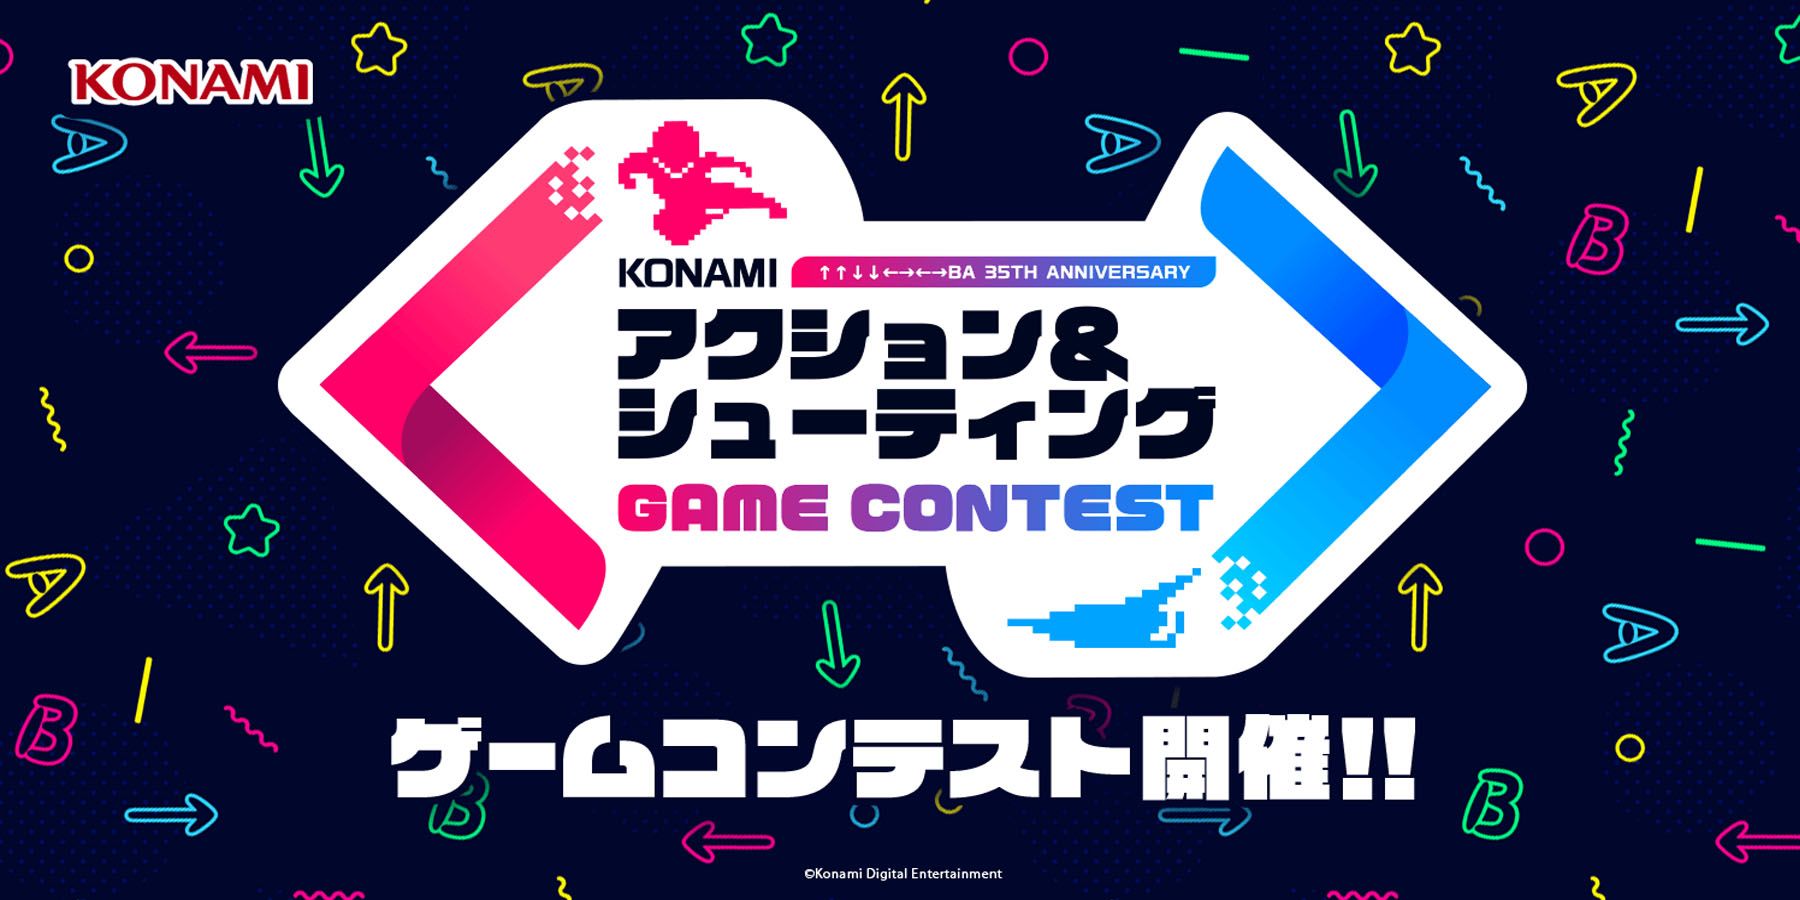 Η Konami προσκαλεί ανεξάρτητους προγραμματιστές να φτιάξουν παιχνίδια βασισμένα σε κλασικά Franchise